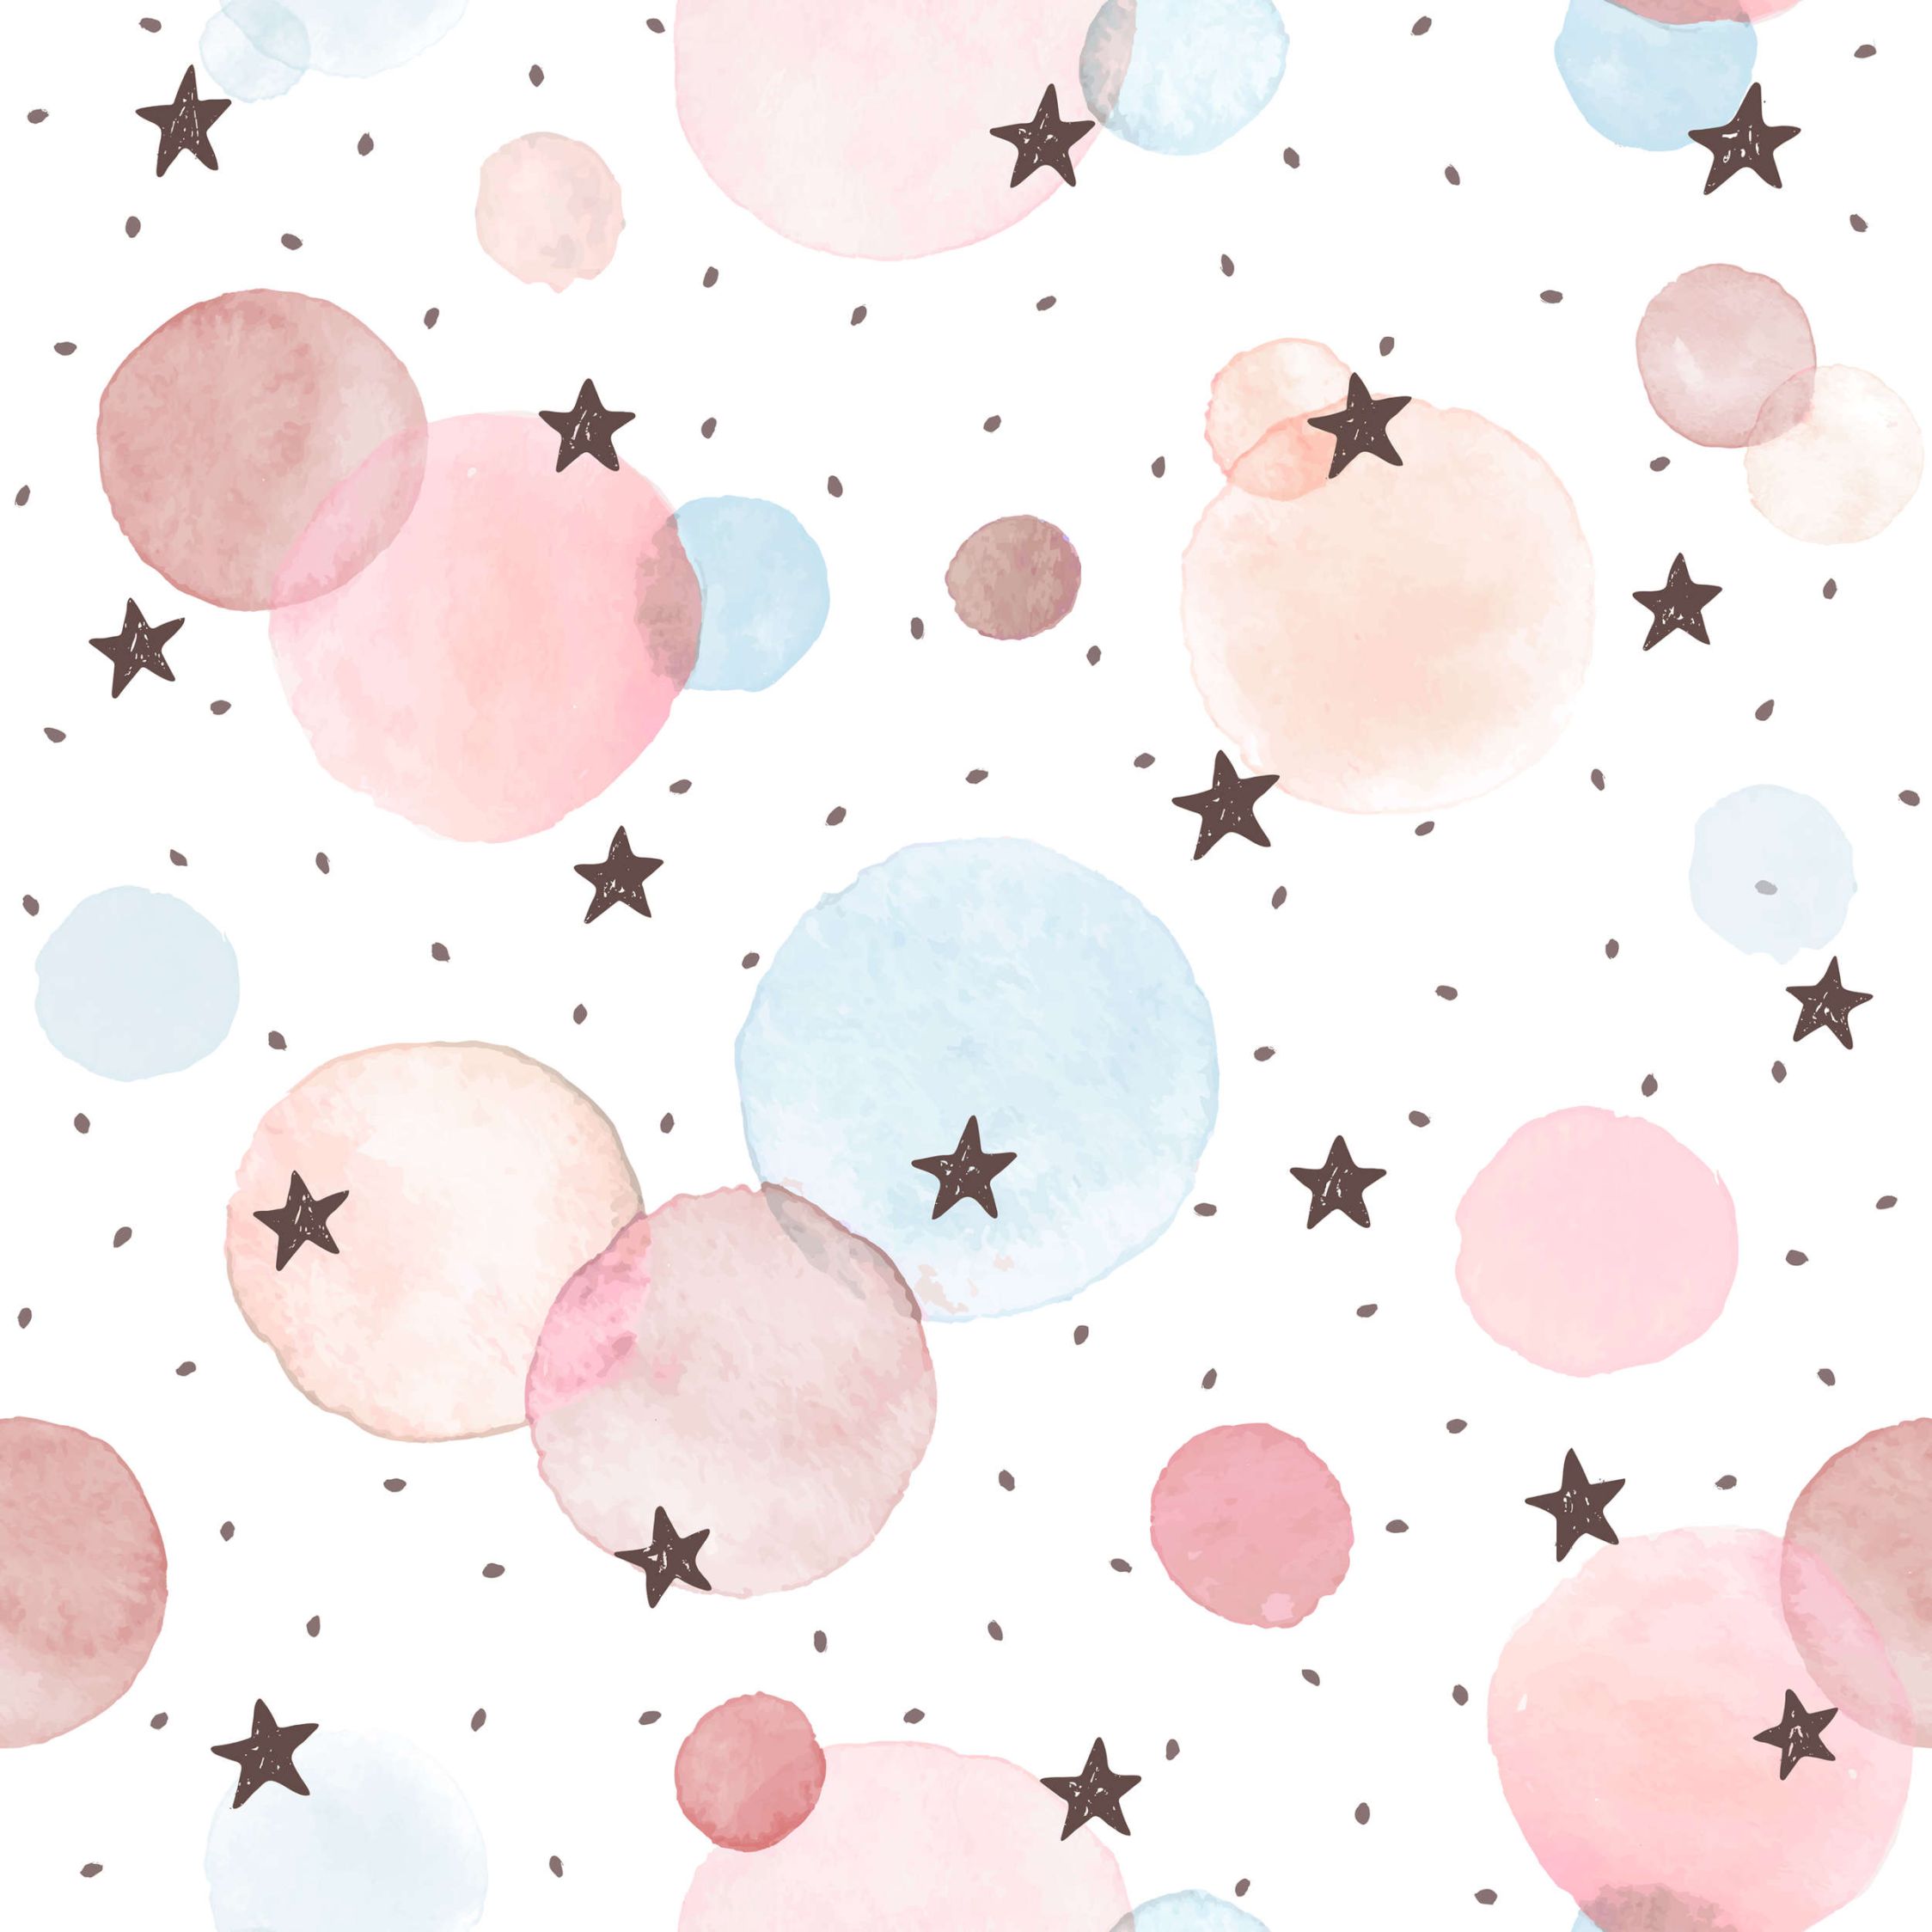             papiers peints à impression numérique pour chambre d'enfant avec étoiles, points et cercles - intissé lisse & légèrement brillant
        